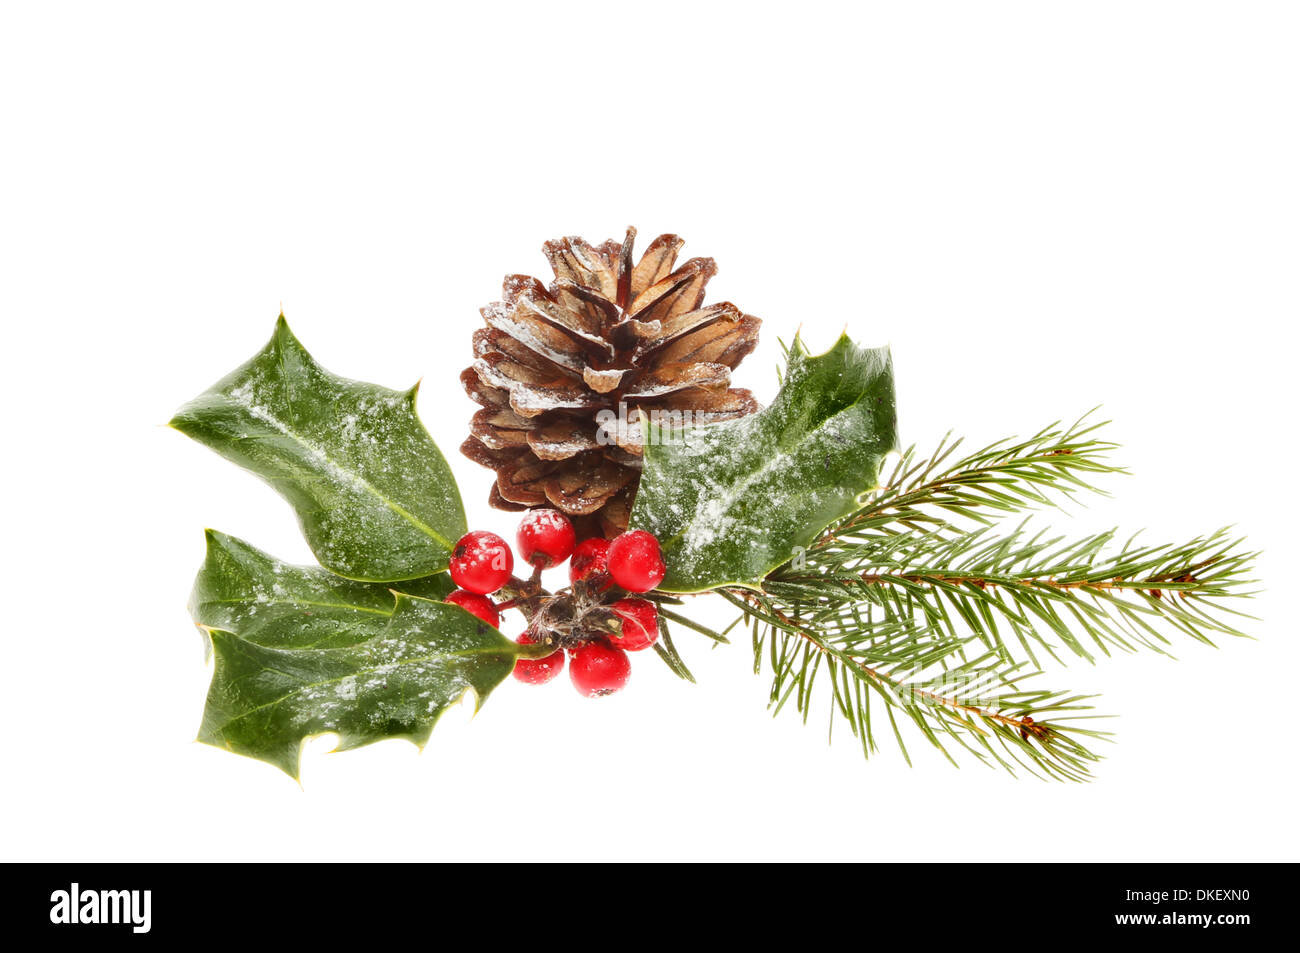 Le feuillage de saison de Noël un cône de pin, aiguilles de pins et de houx aux fruits rouges isolés contre white Banque D'Images